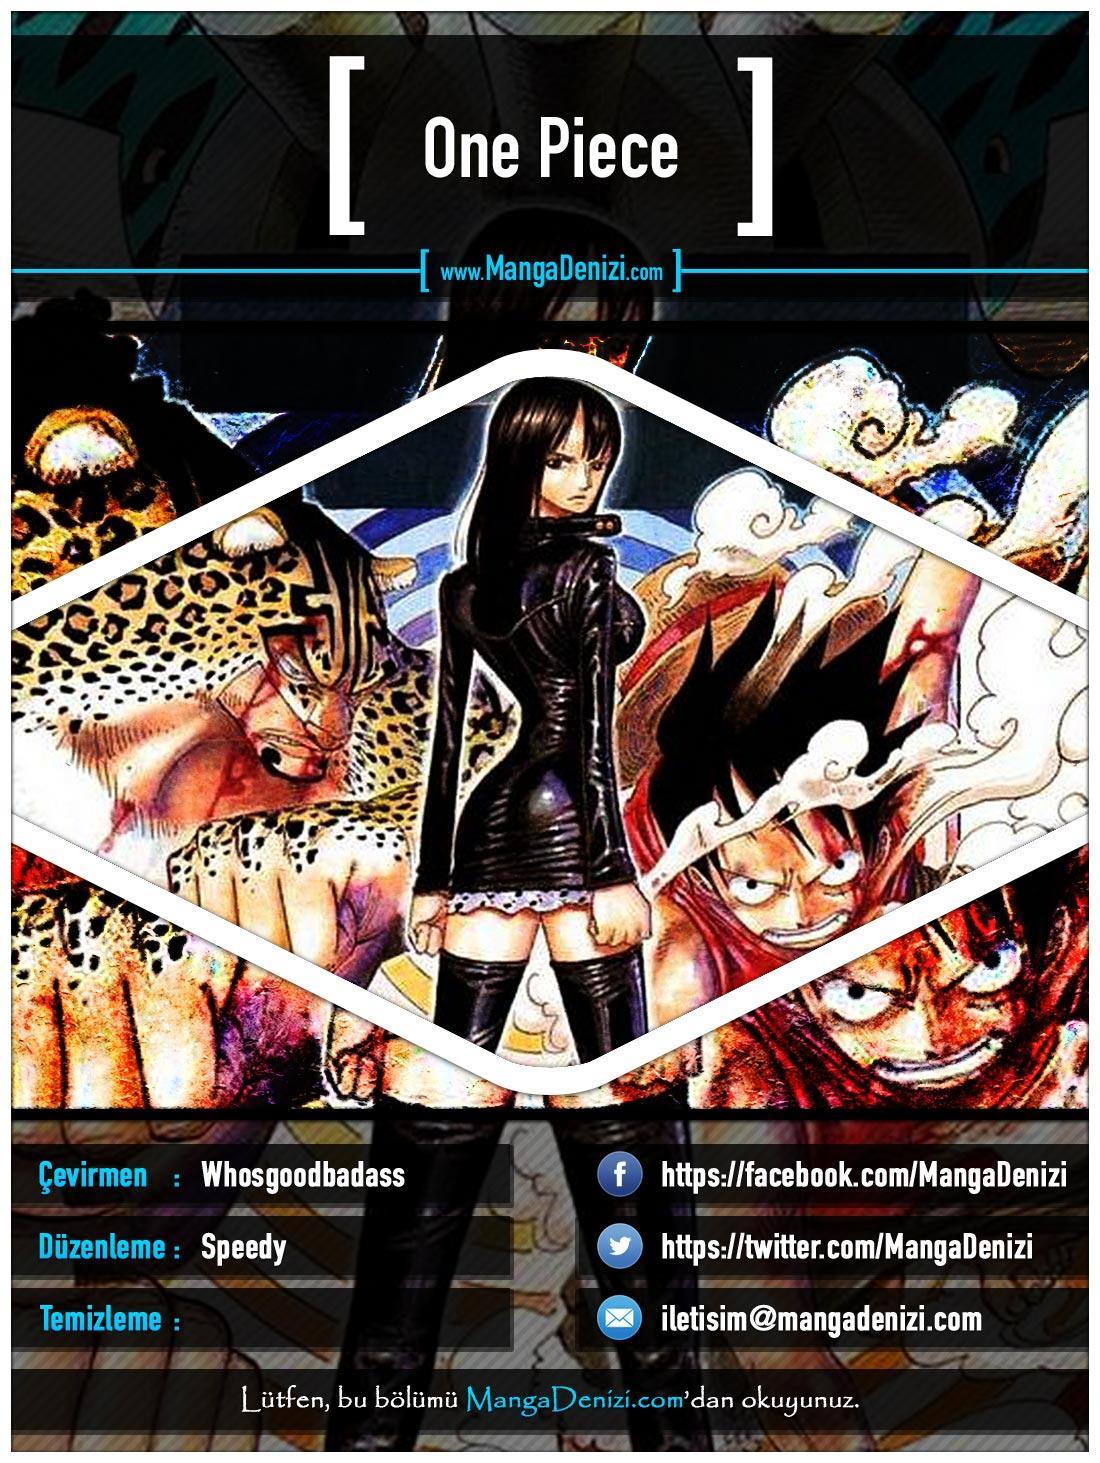 One Piece [Renkli] mangasının 0343 bölümünün 1. sayfasını okuyorsunuz.